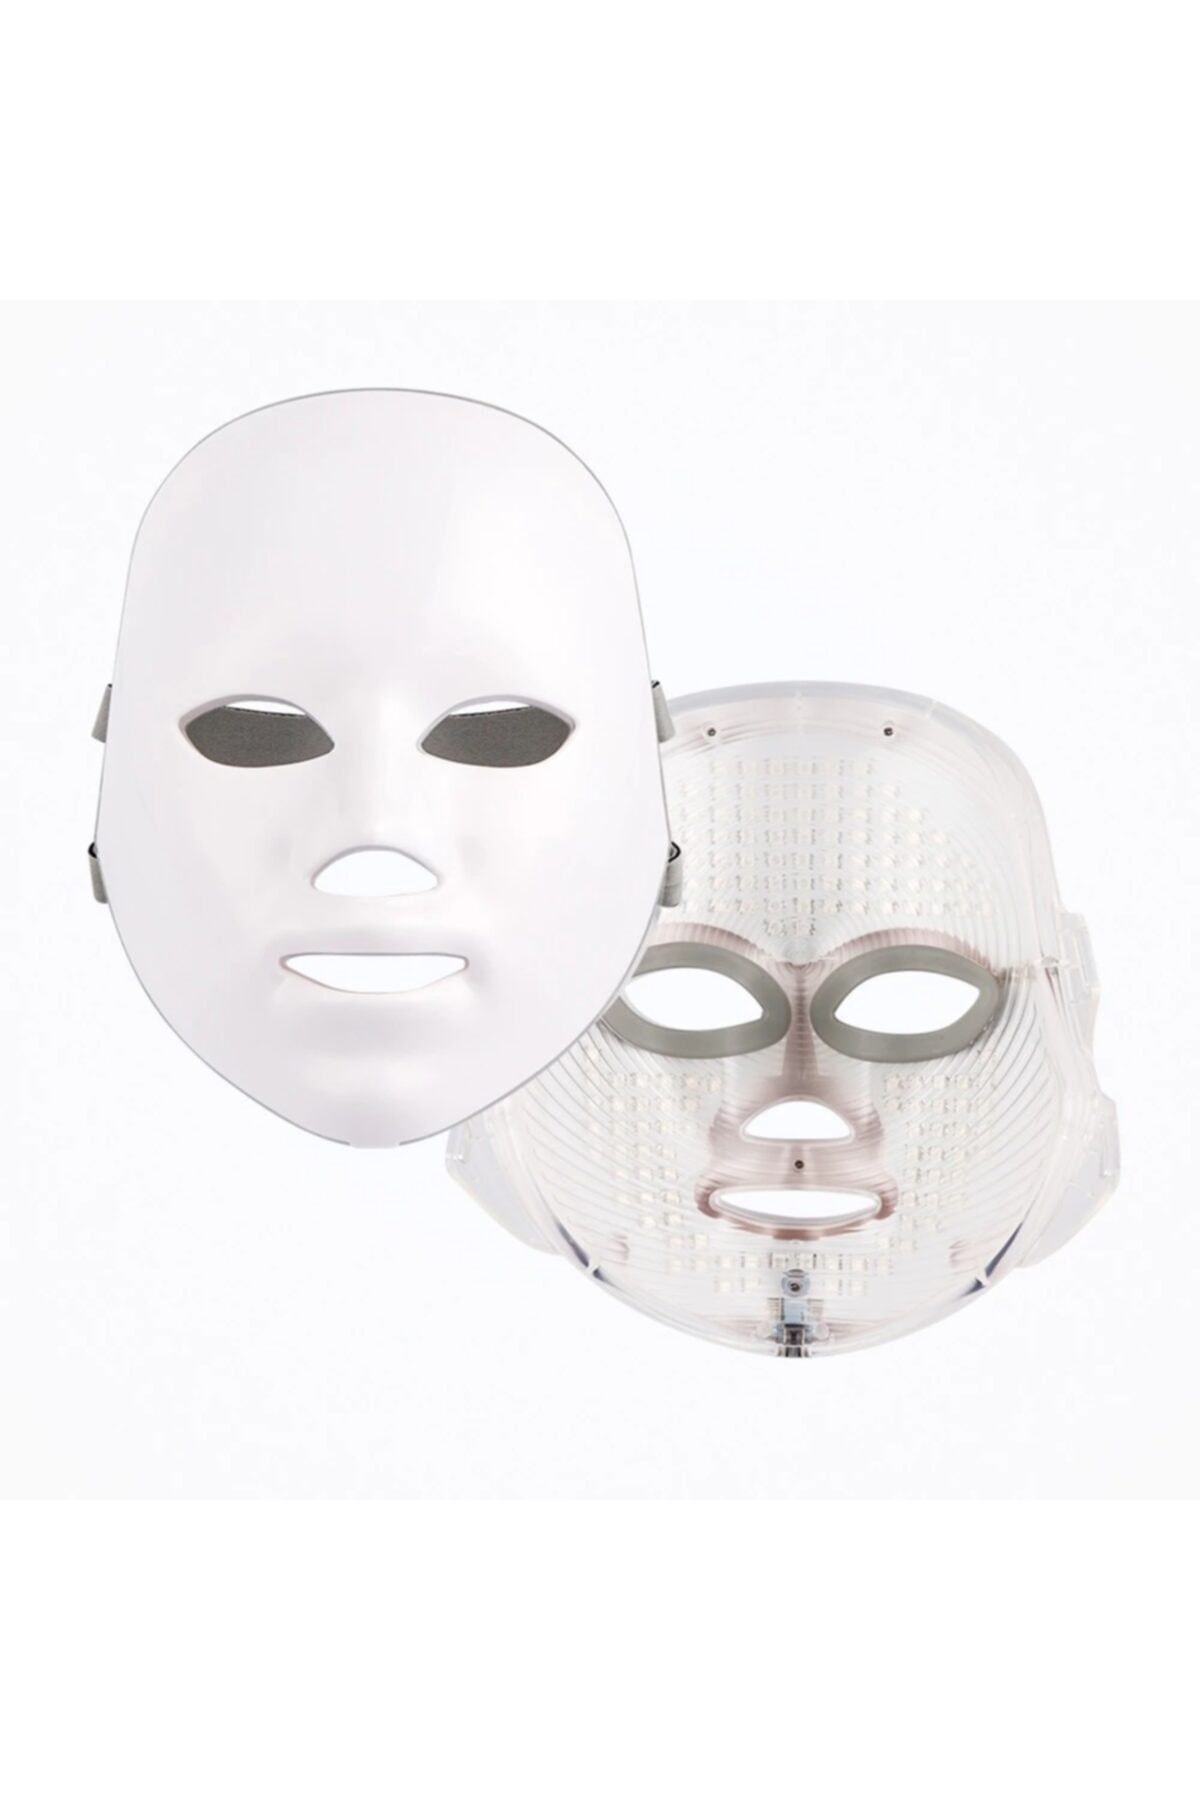 TheBeautyStore Yüz Bakım Maskesi Foton Terapi Kırışıklık Leke Giderici Led Maske